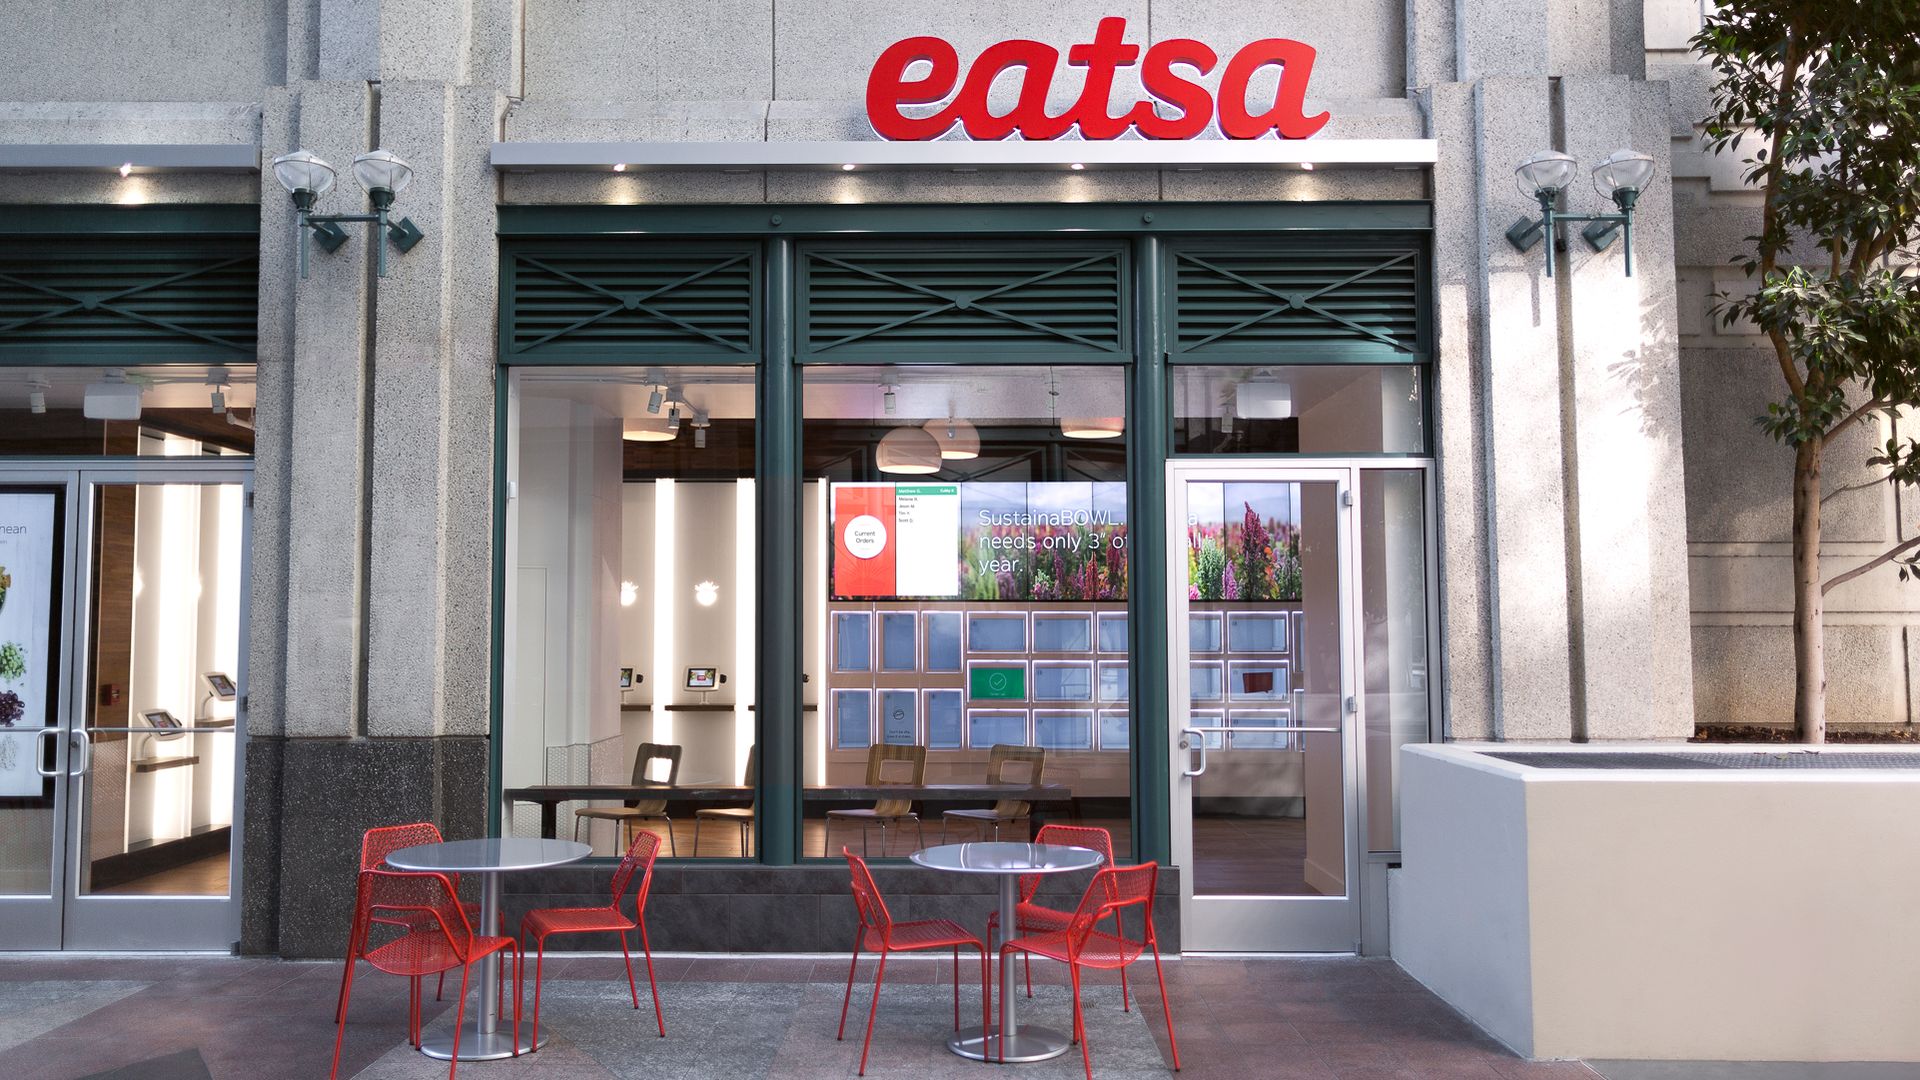 The exterior of an Eatsa restaurant